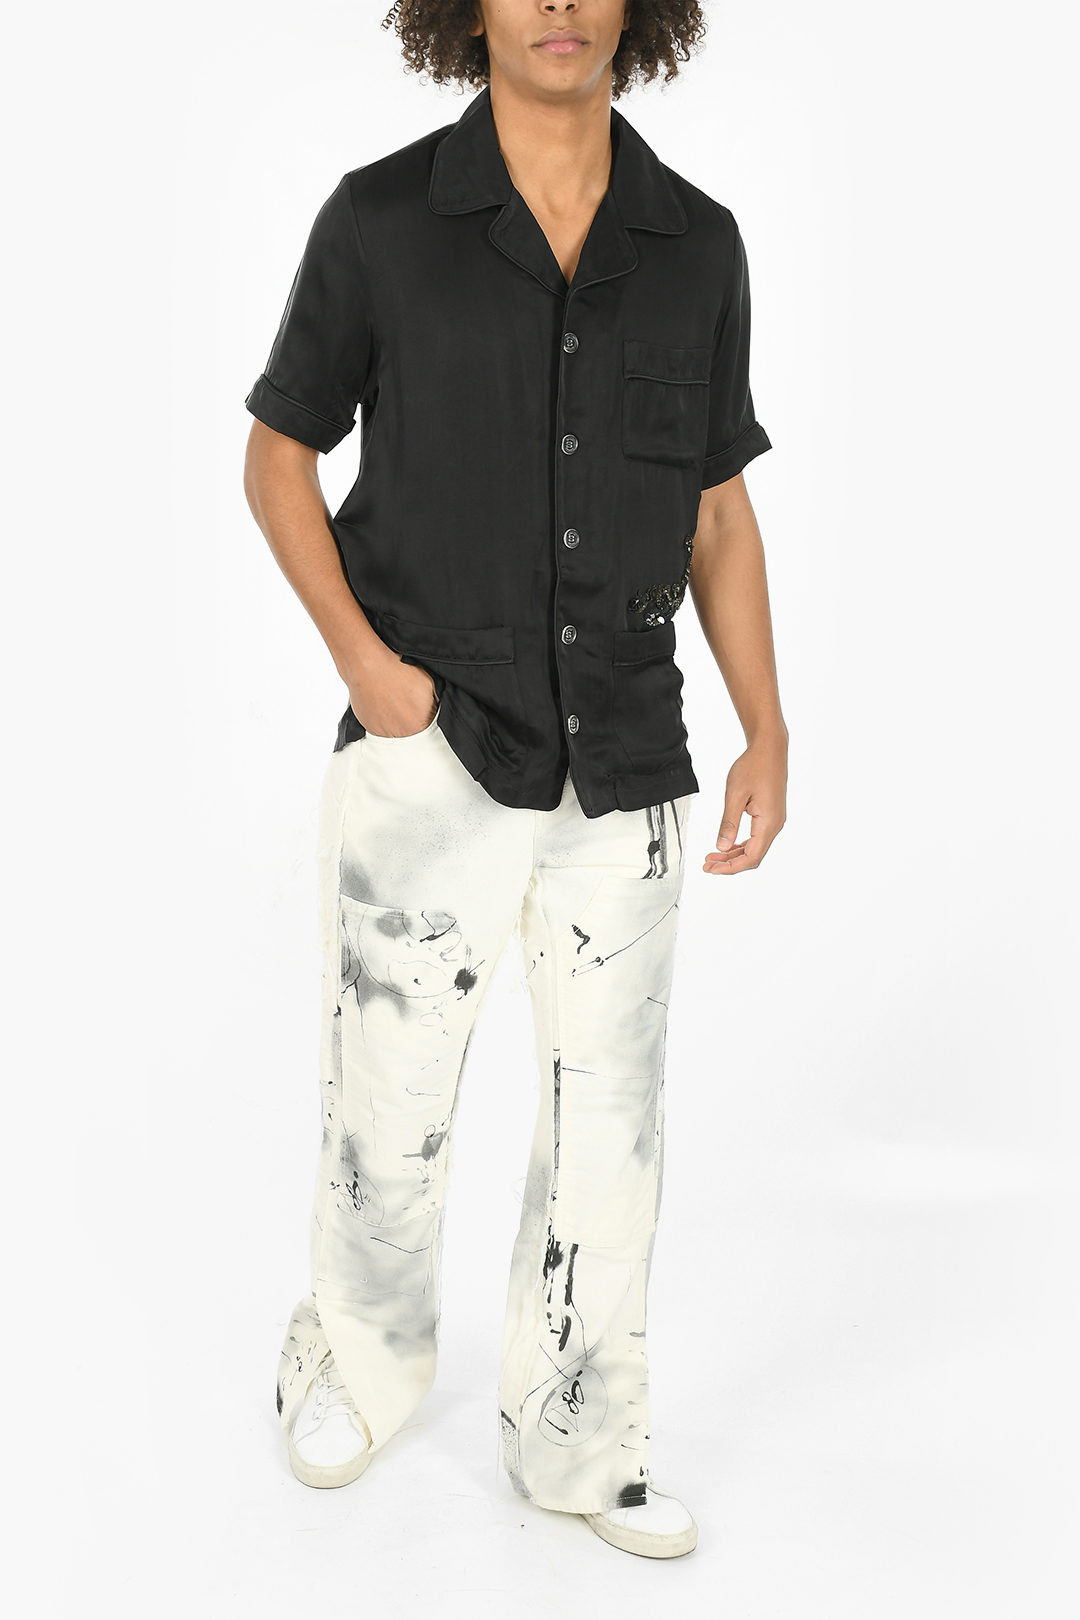 Off-White Short Sleeves SCORPION Shirt Embelished With Rhinestones men -  Glamood Outlet